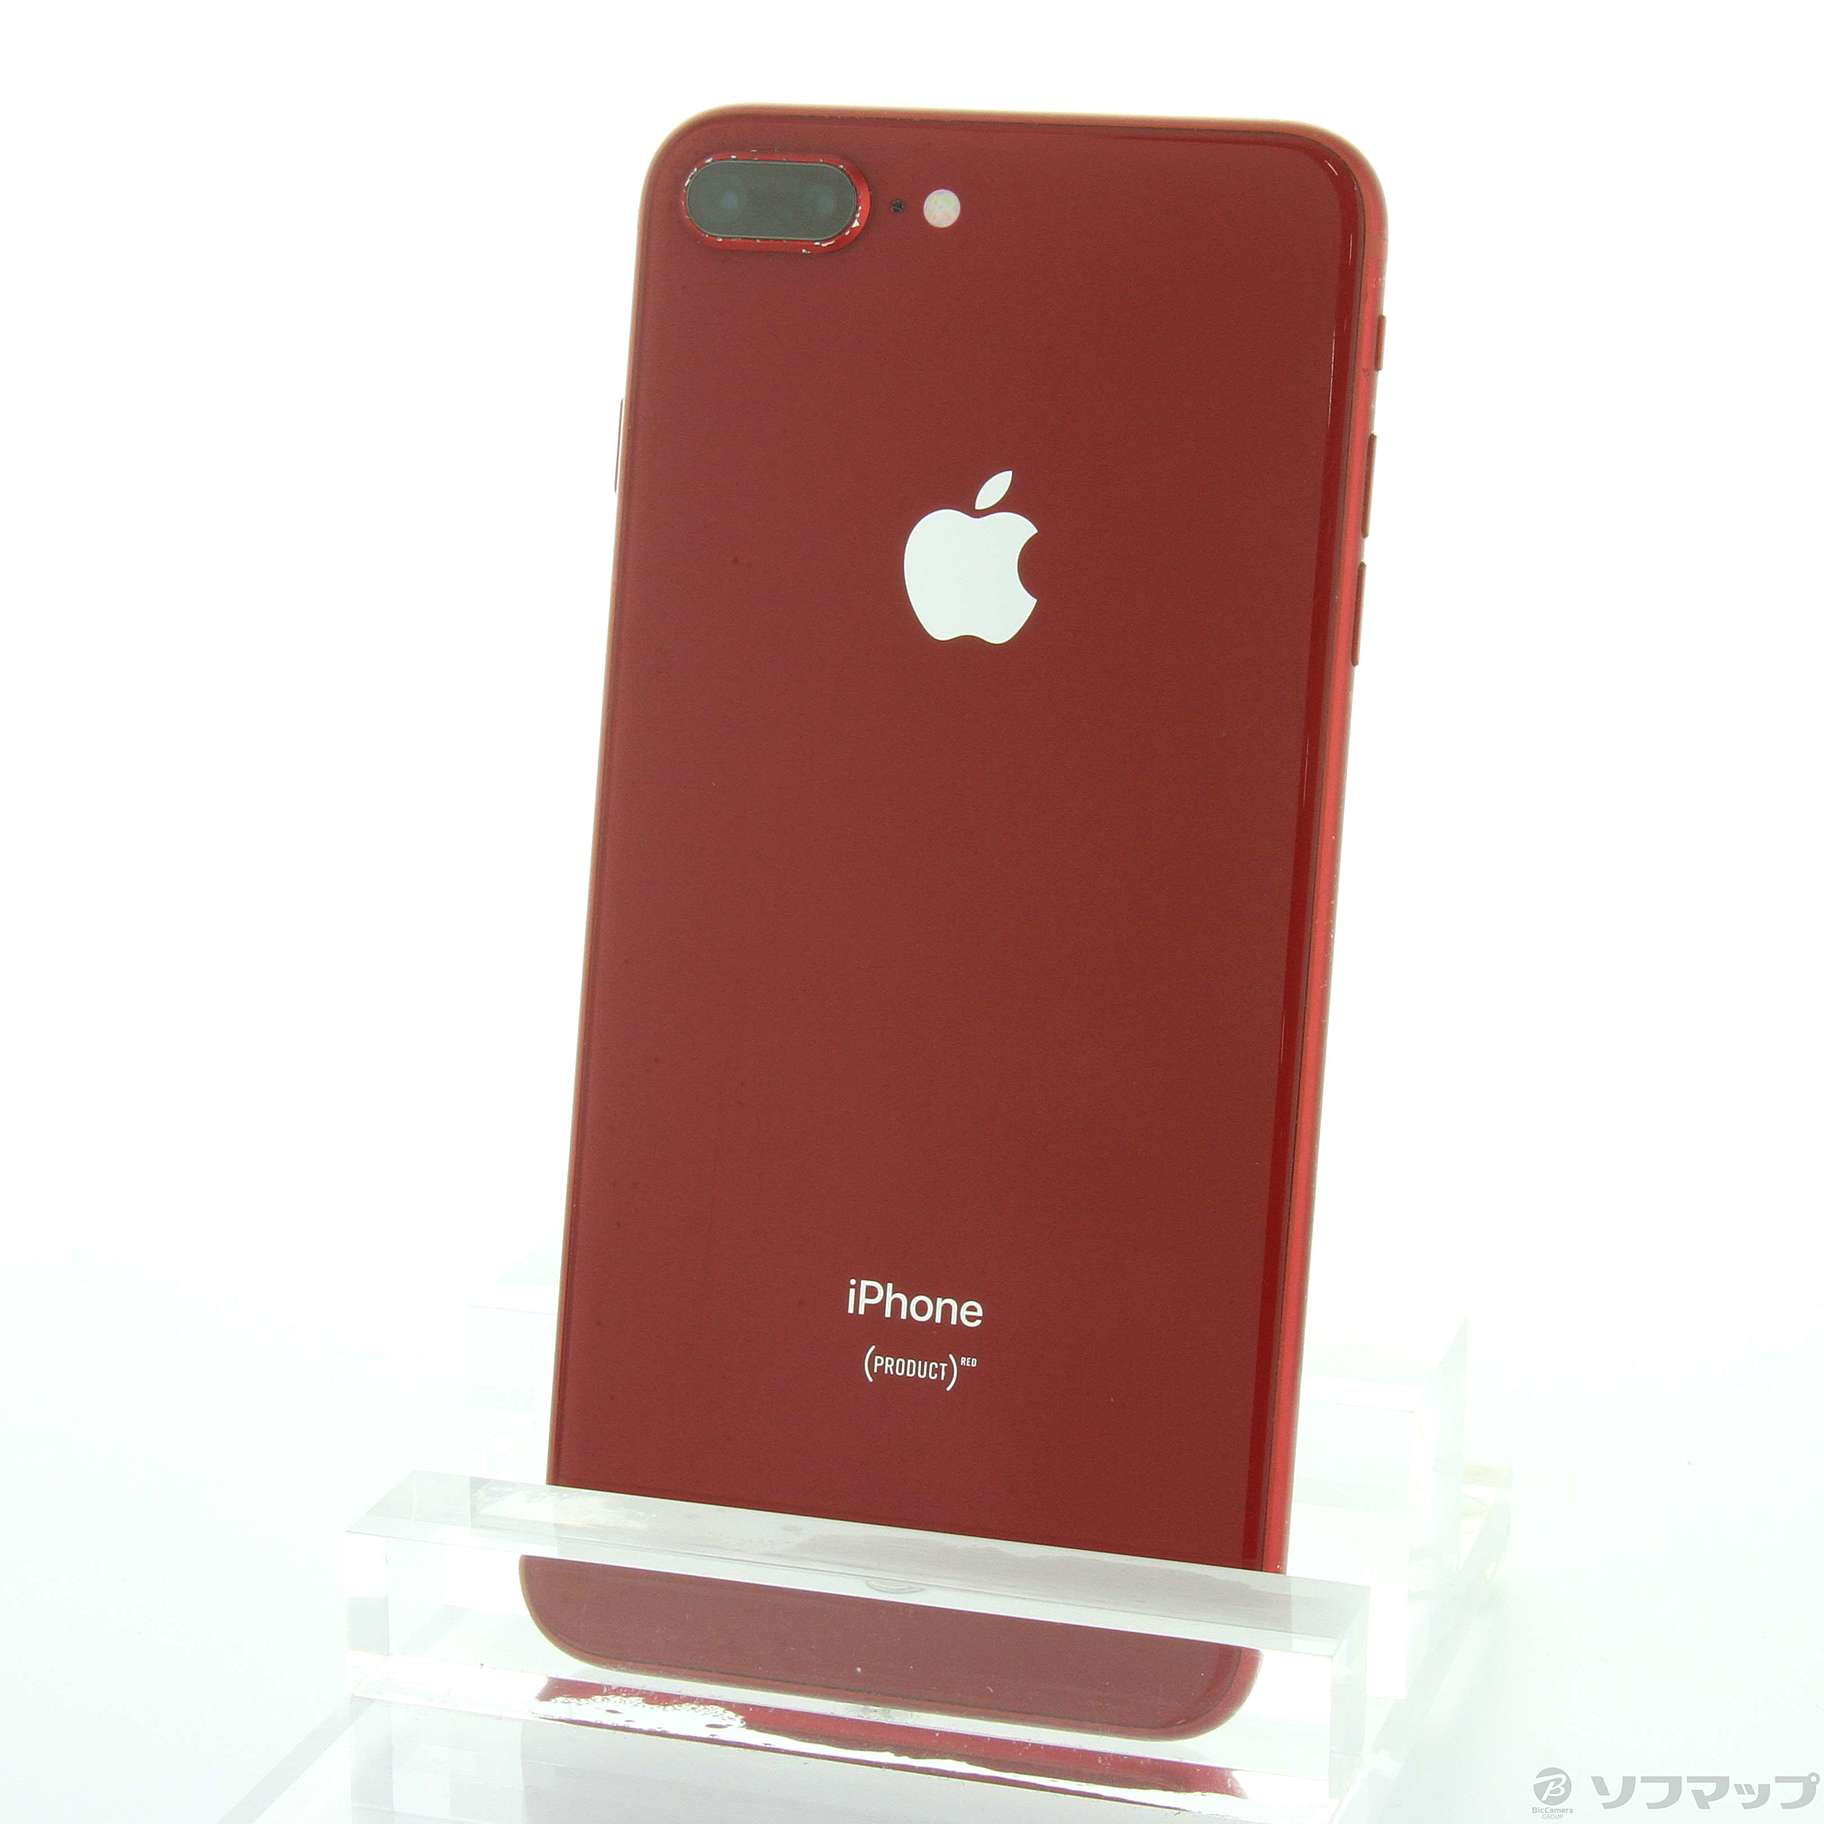 iPhone8 plus 64gb simフリー product RED www.krzysztofbialy.com